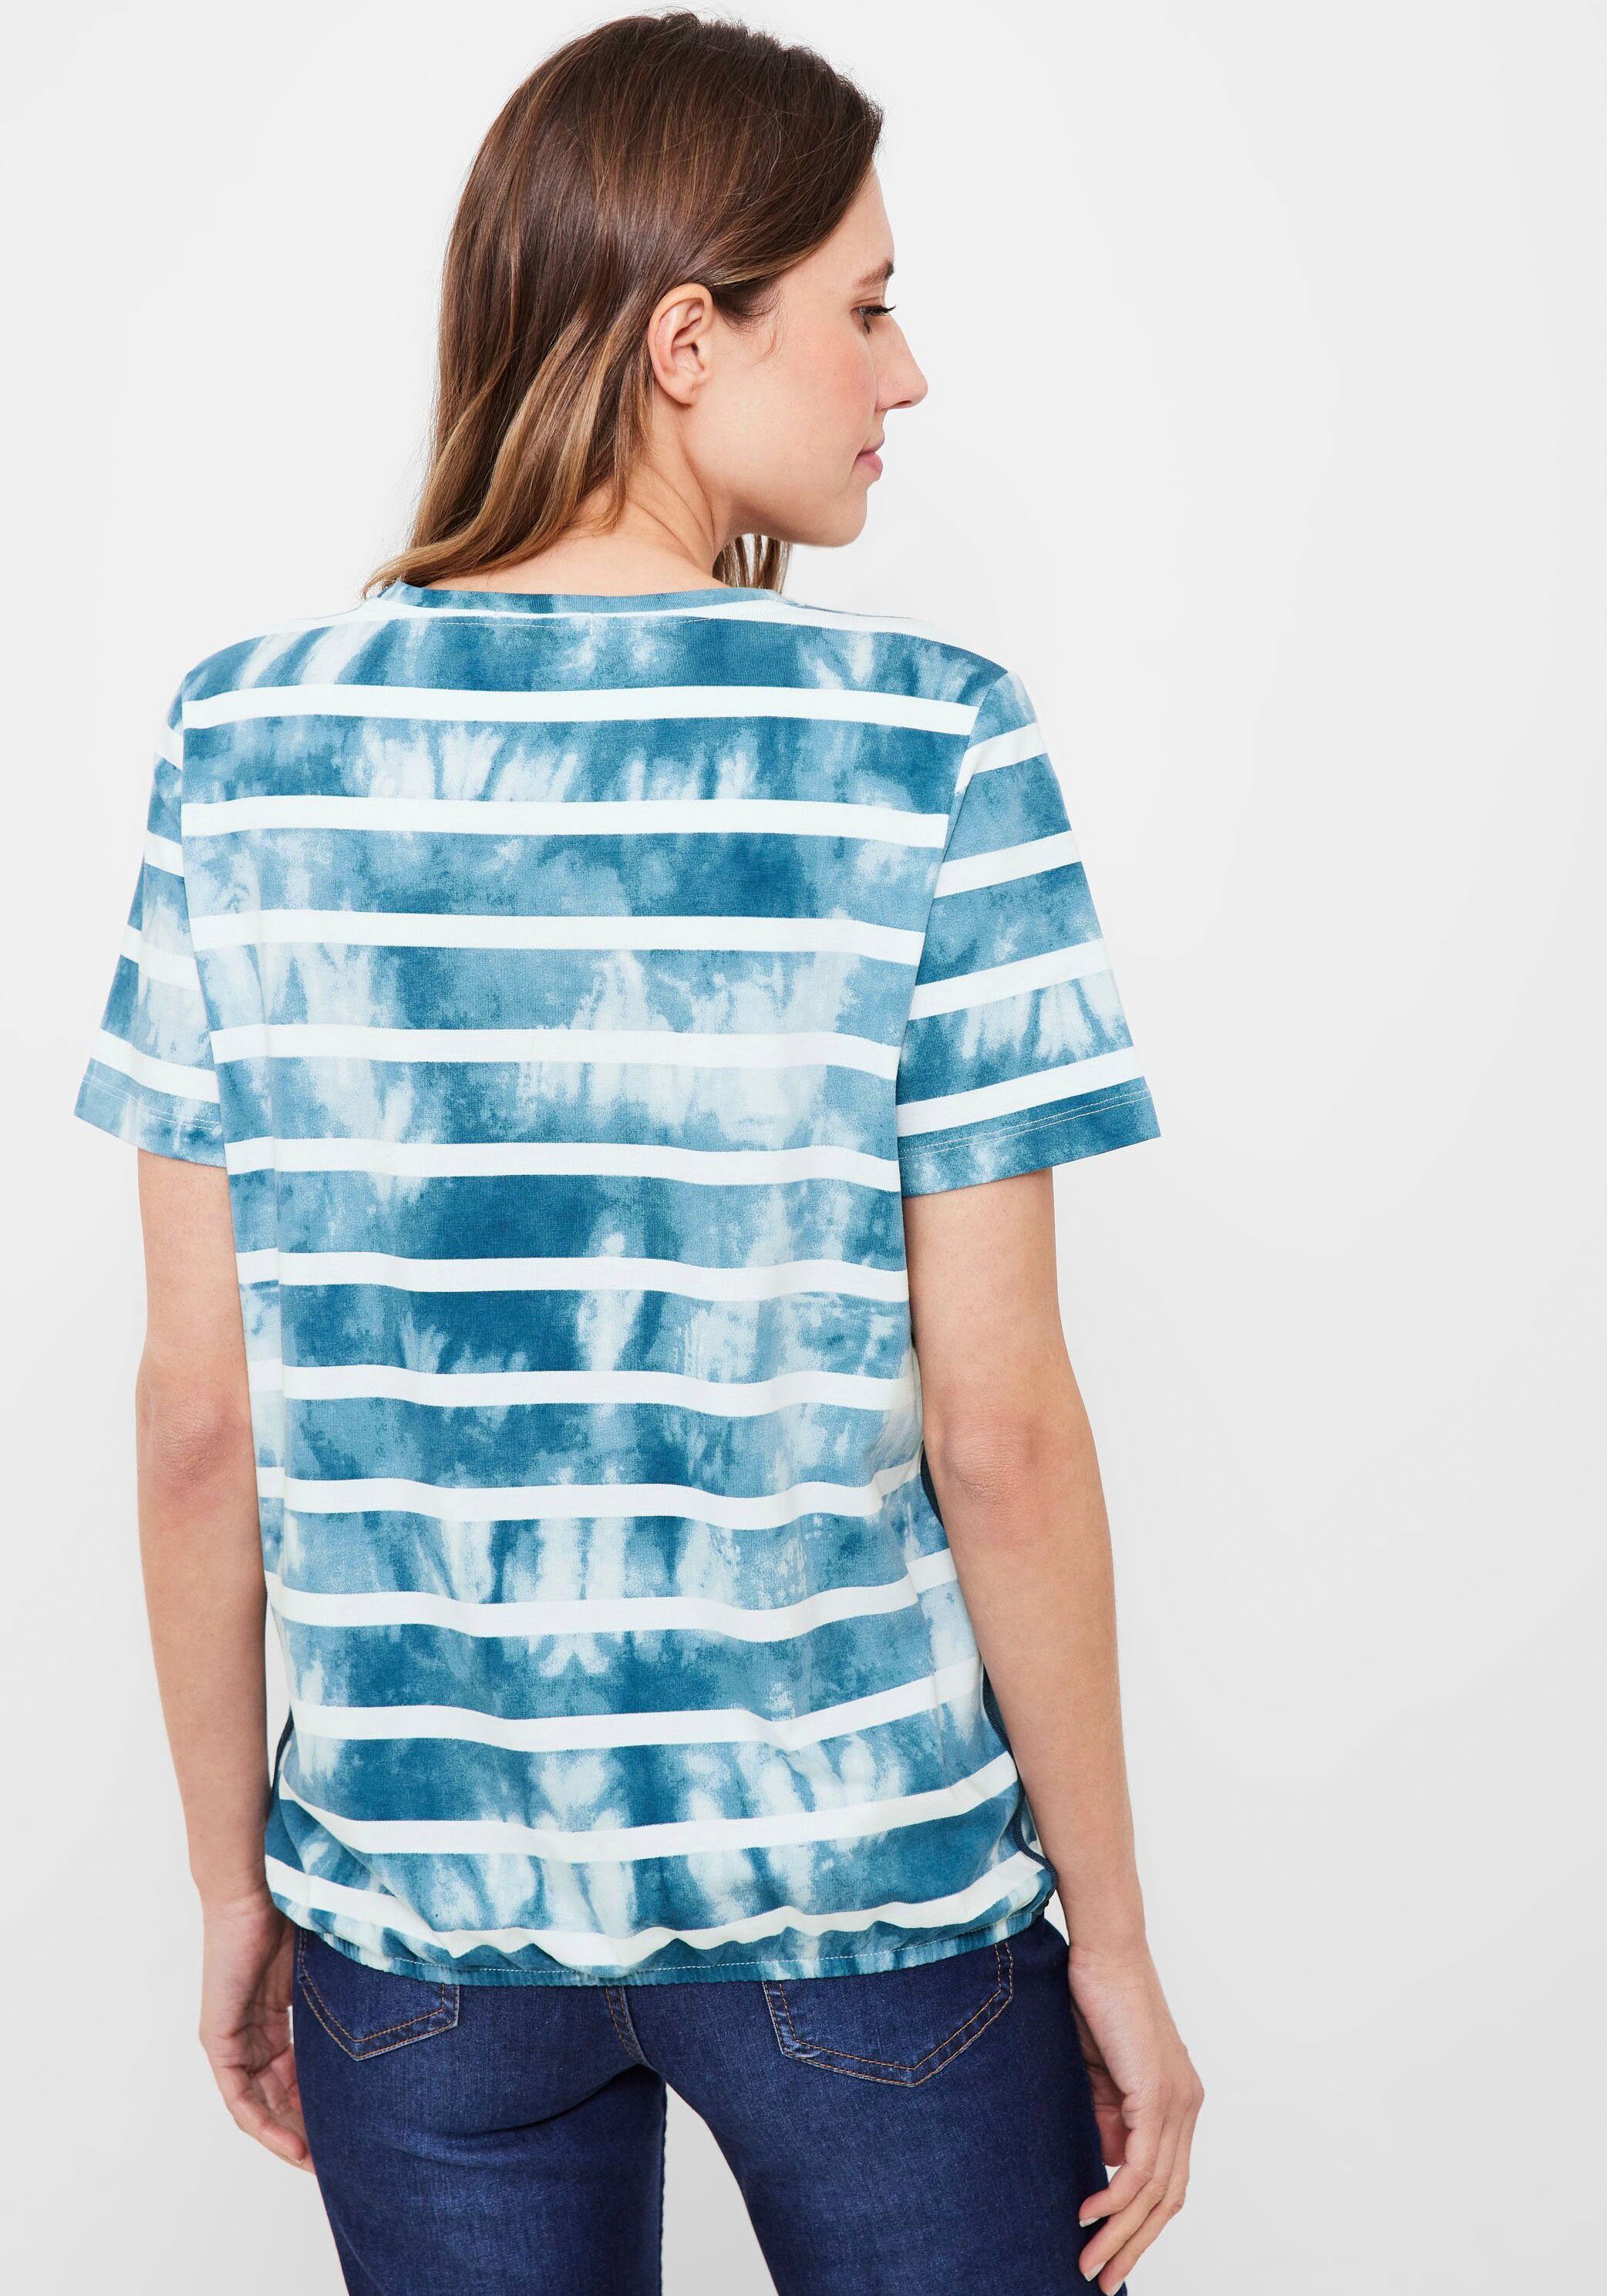 teal mit blue Paillettenverzierung Cecil Print-Shirt